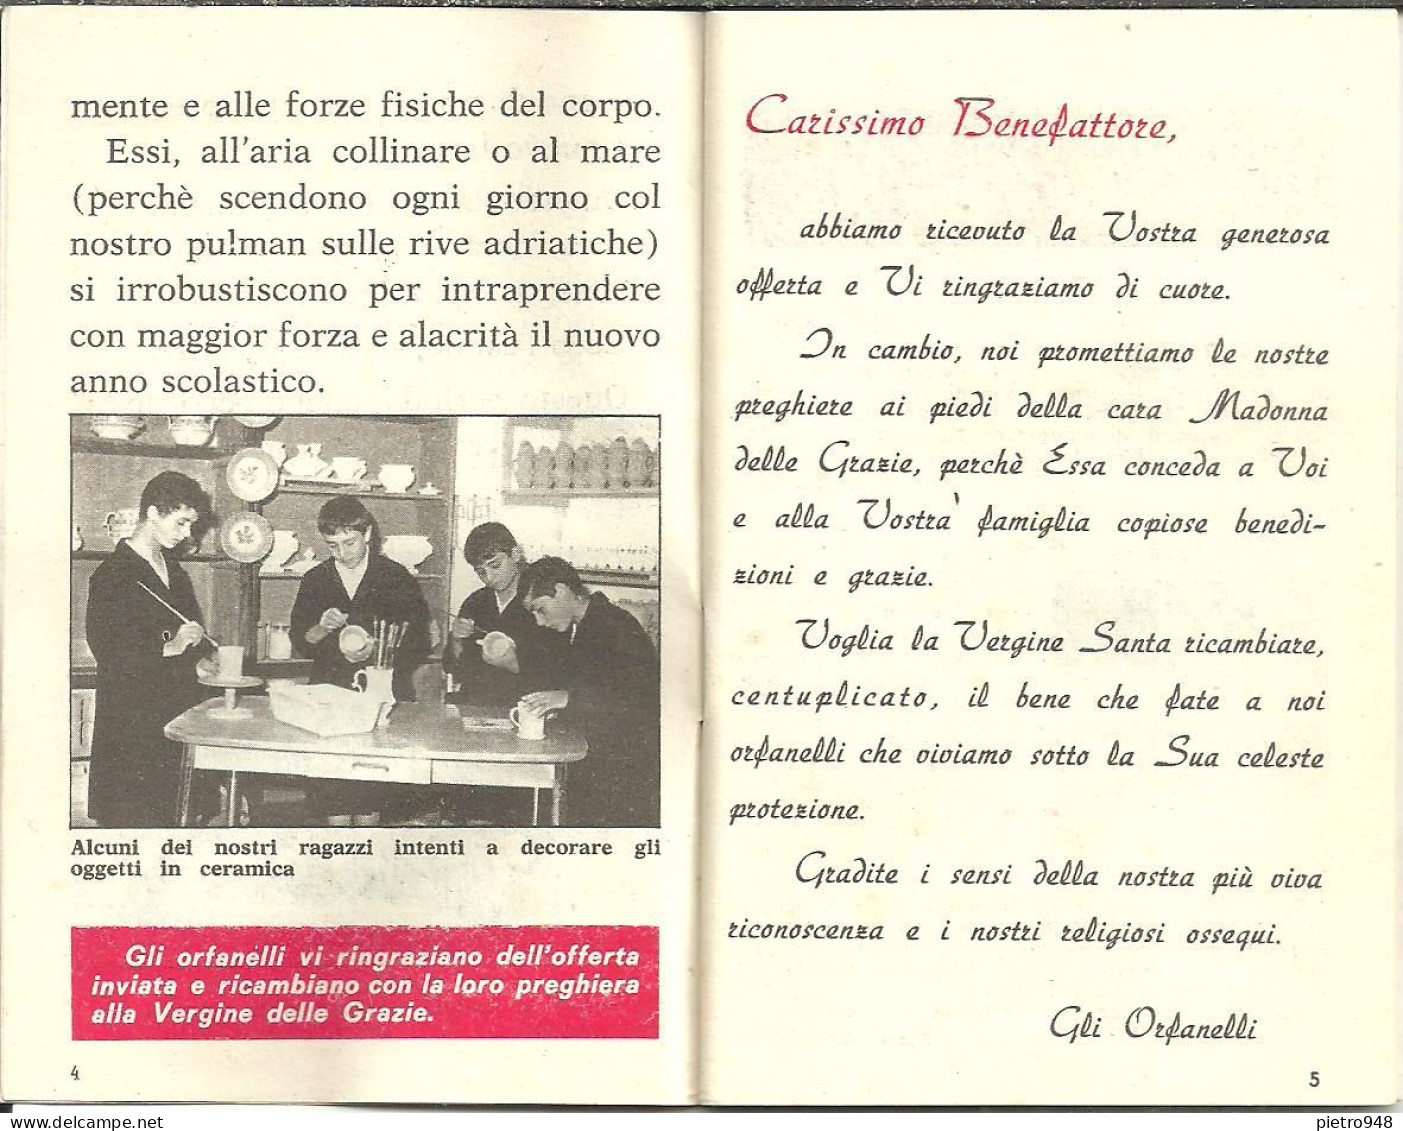 Libro (Libretto) Religioso "Opera Madonna Delle Grazie E Sant'Antonio" Corato (Bari), Agendina 1970 - Religione/Spiritualismo